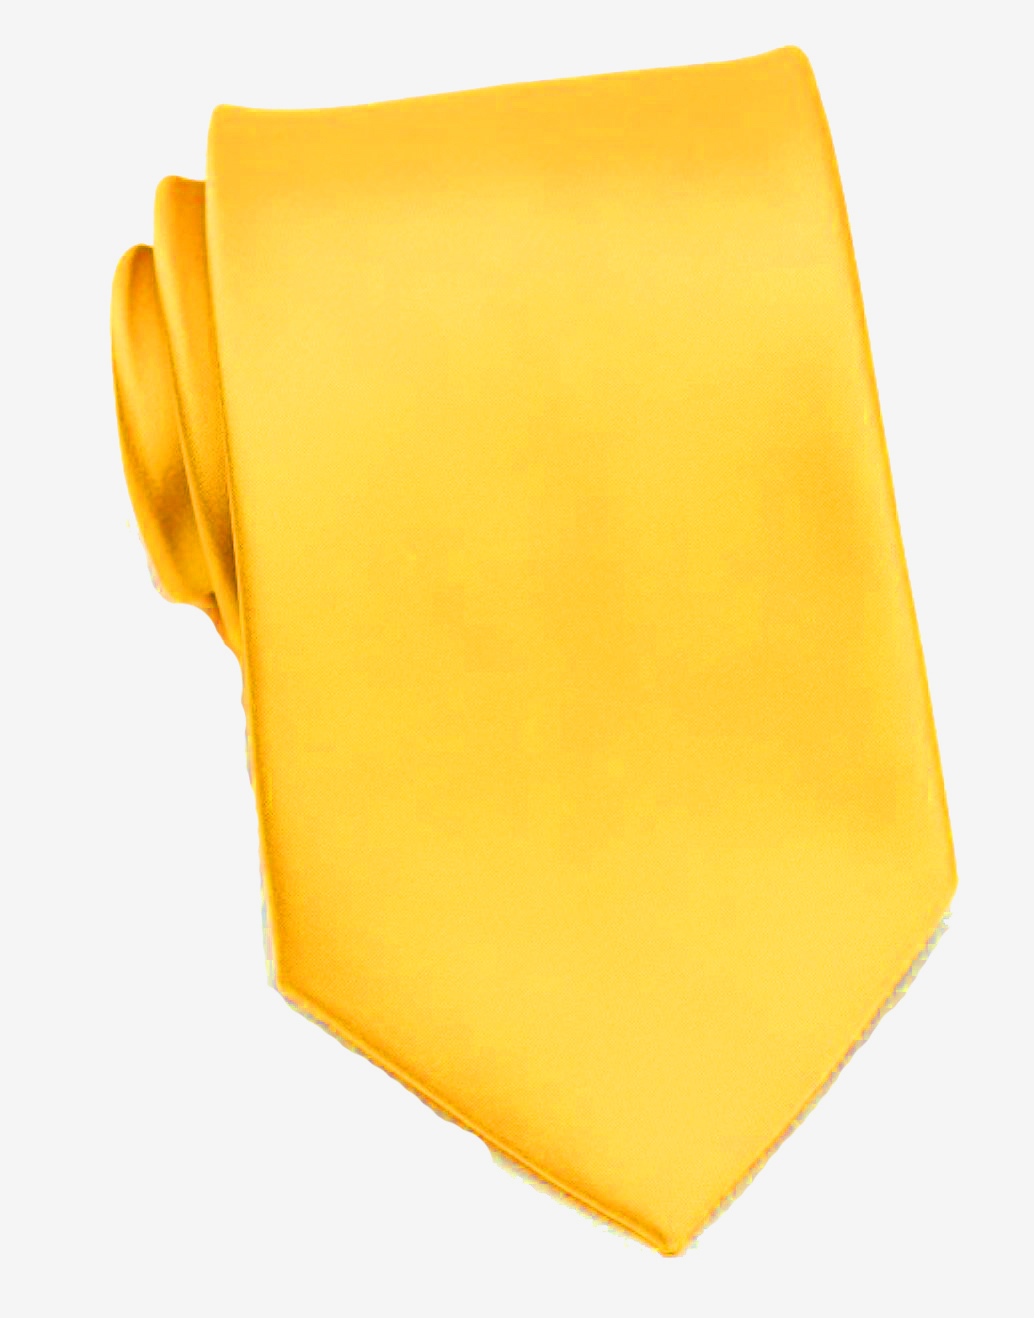 Галстук атласный широкий ярко-желтый описание: Фасон - Классический, Материал - Полиэстер, Цвет - Ярко-желтый, Размер - 8,5 см. х 150 см., Страна производства - Турция.